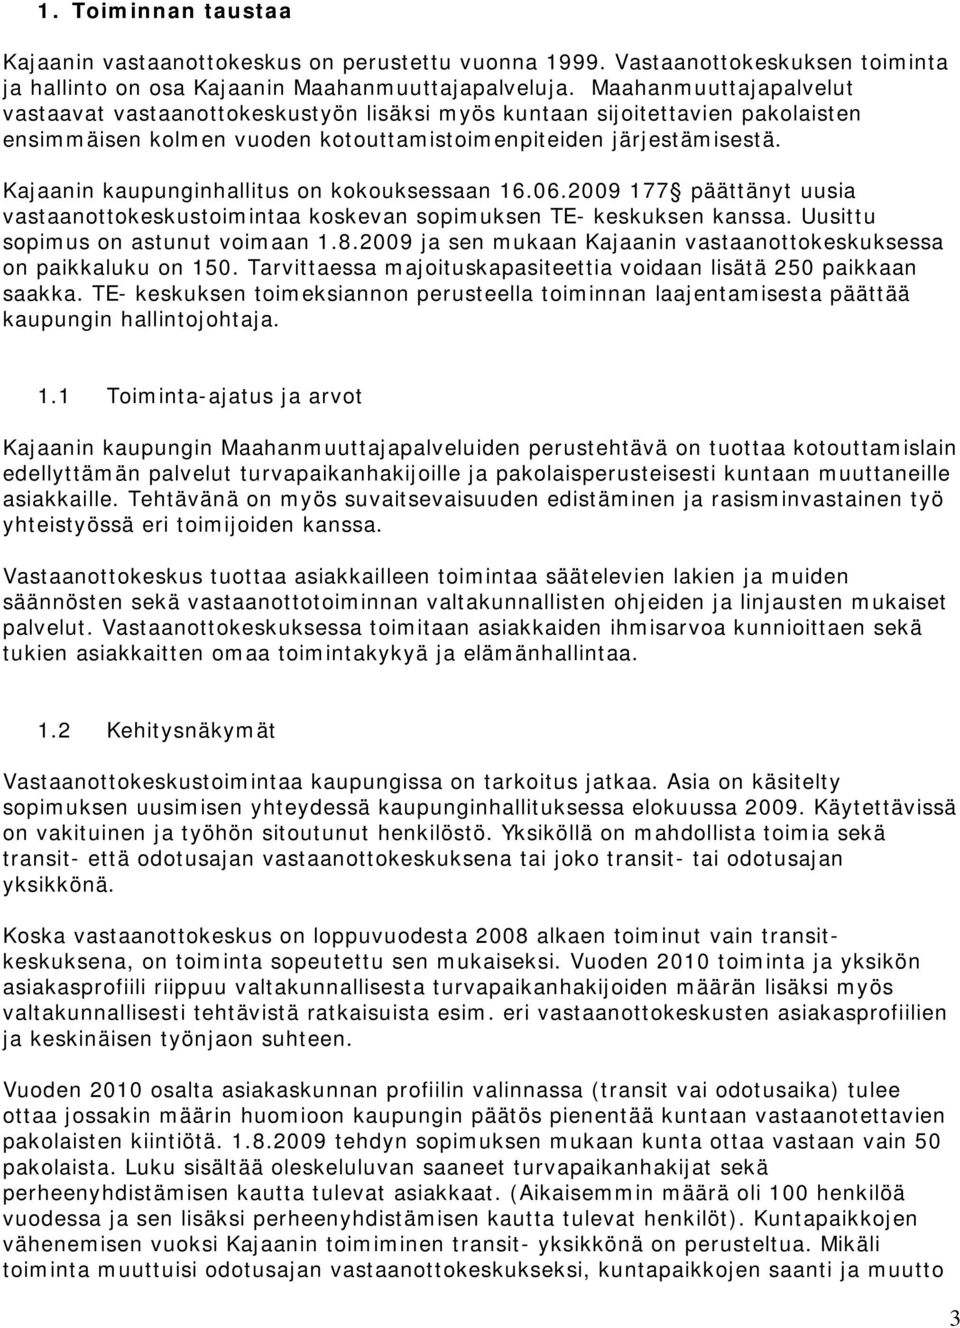 Kajaanin kaupunginhallitus on kokouksessaan 16.06.2009 177 päättänyt uusia vastaanottokeskustoimintaa koskevan sopimuksen TE- keskuksen kanssa. Uusittu sopimus on astunut voimaan 1.8.